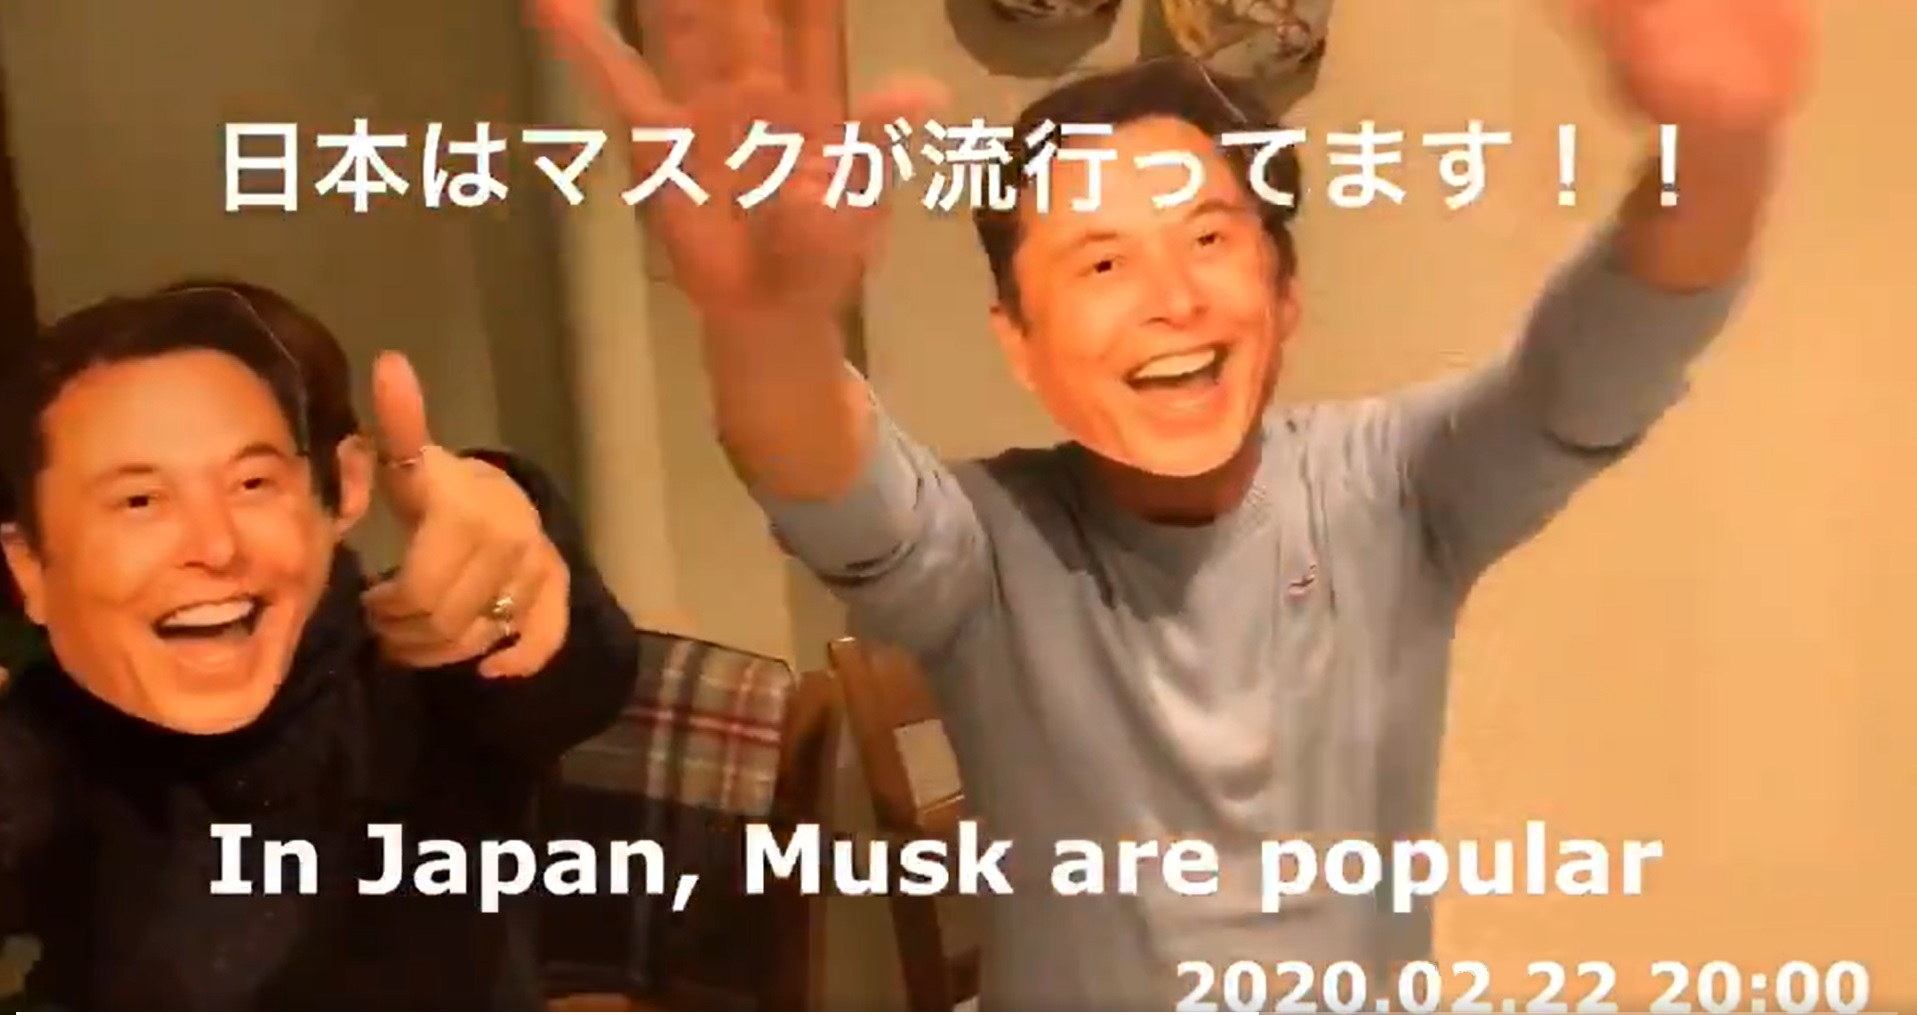 Tesla CEO Elon Musk’s Fans In Japan Held A “Elon Mask” Party